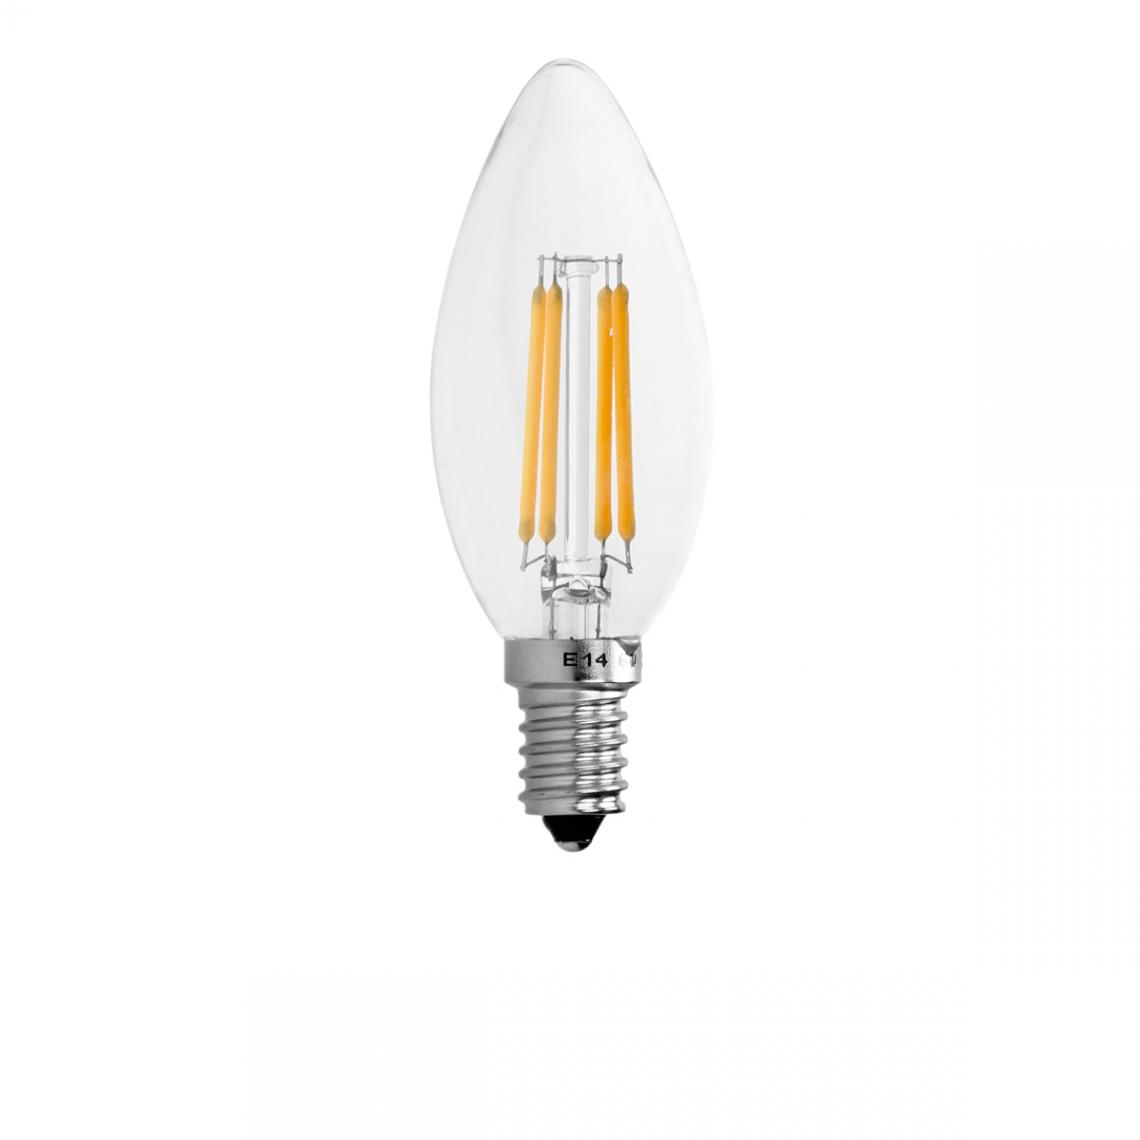 Ecd Germany - ECD Germany 6 x LED Filament de la bougie E14 4W 414 Lumens Angle de courant alternatif 120 ° 220-240 V reste caché et remplace 20W lampe à incandescence ampoule Blanc Chaud - Ampoules LED